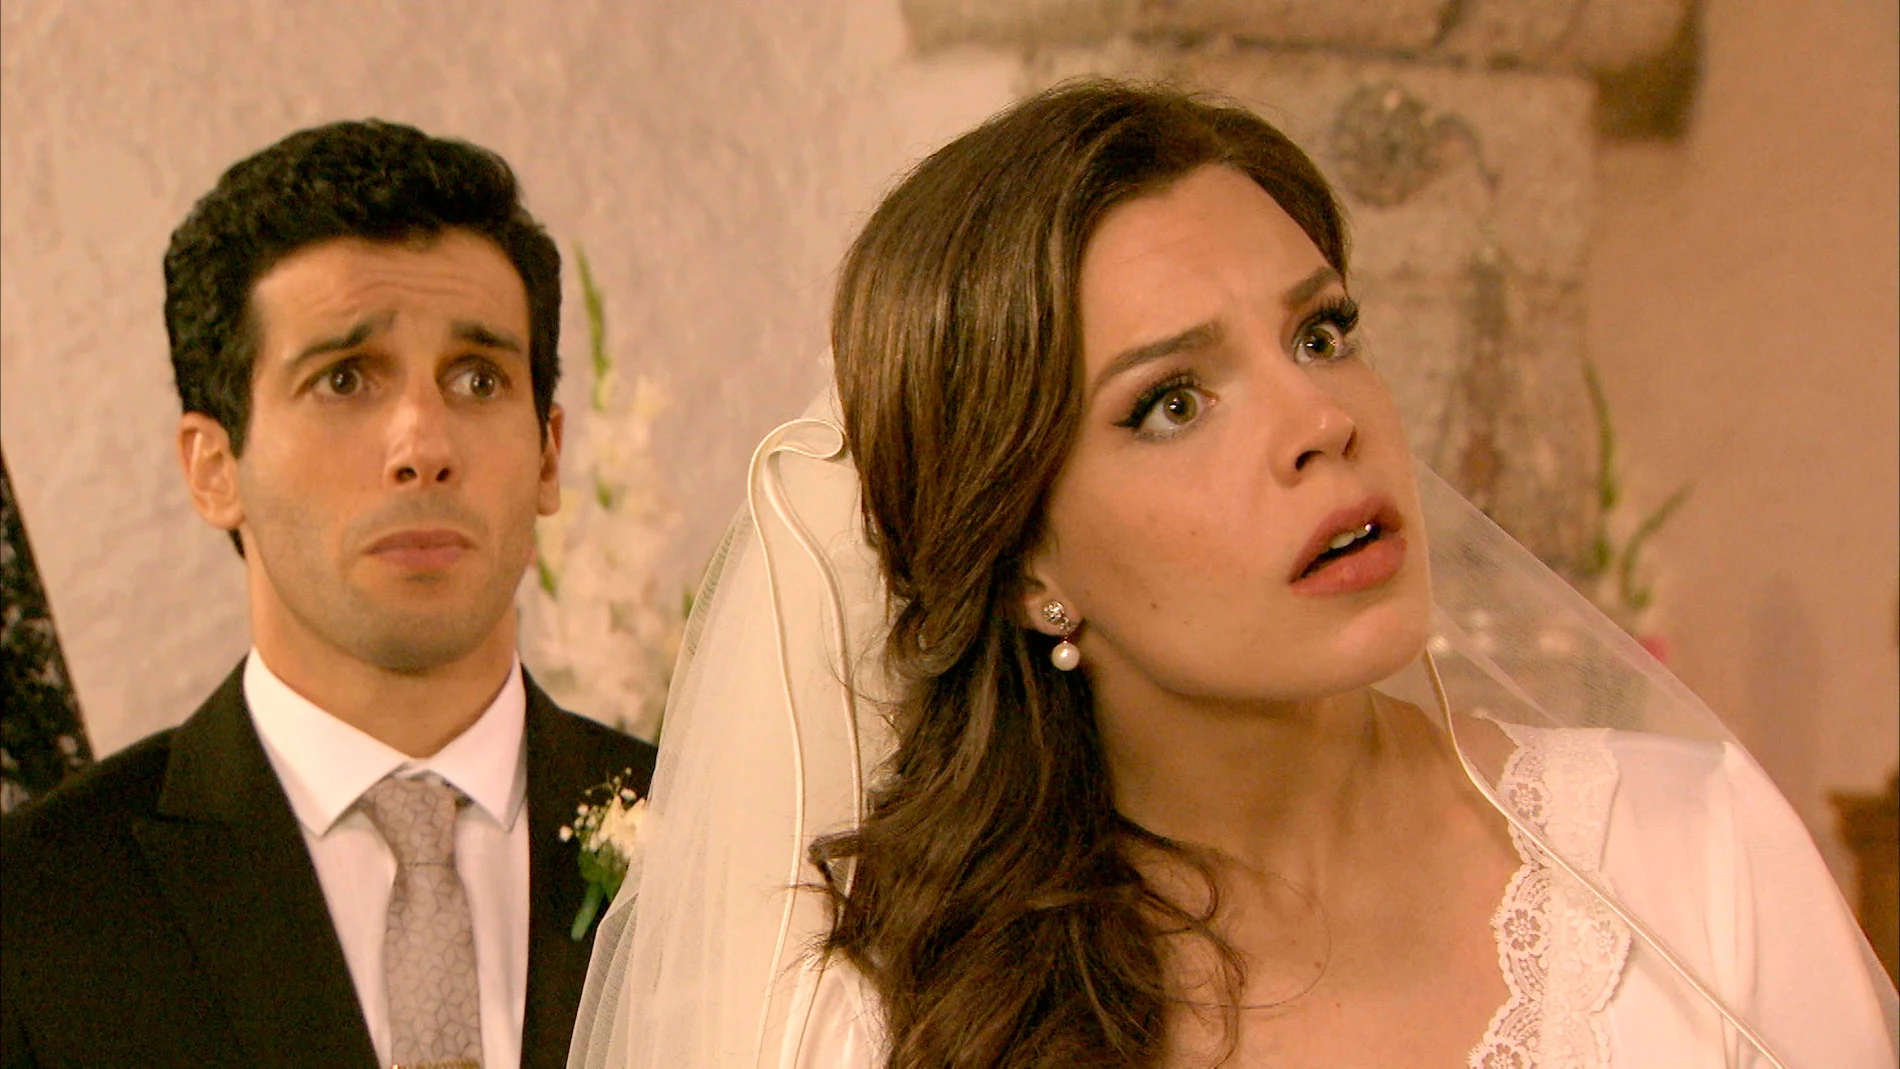 El enlace de María e Ignacio, en peligro: "Esta boda no se puede celebrar"